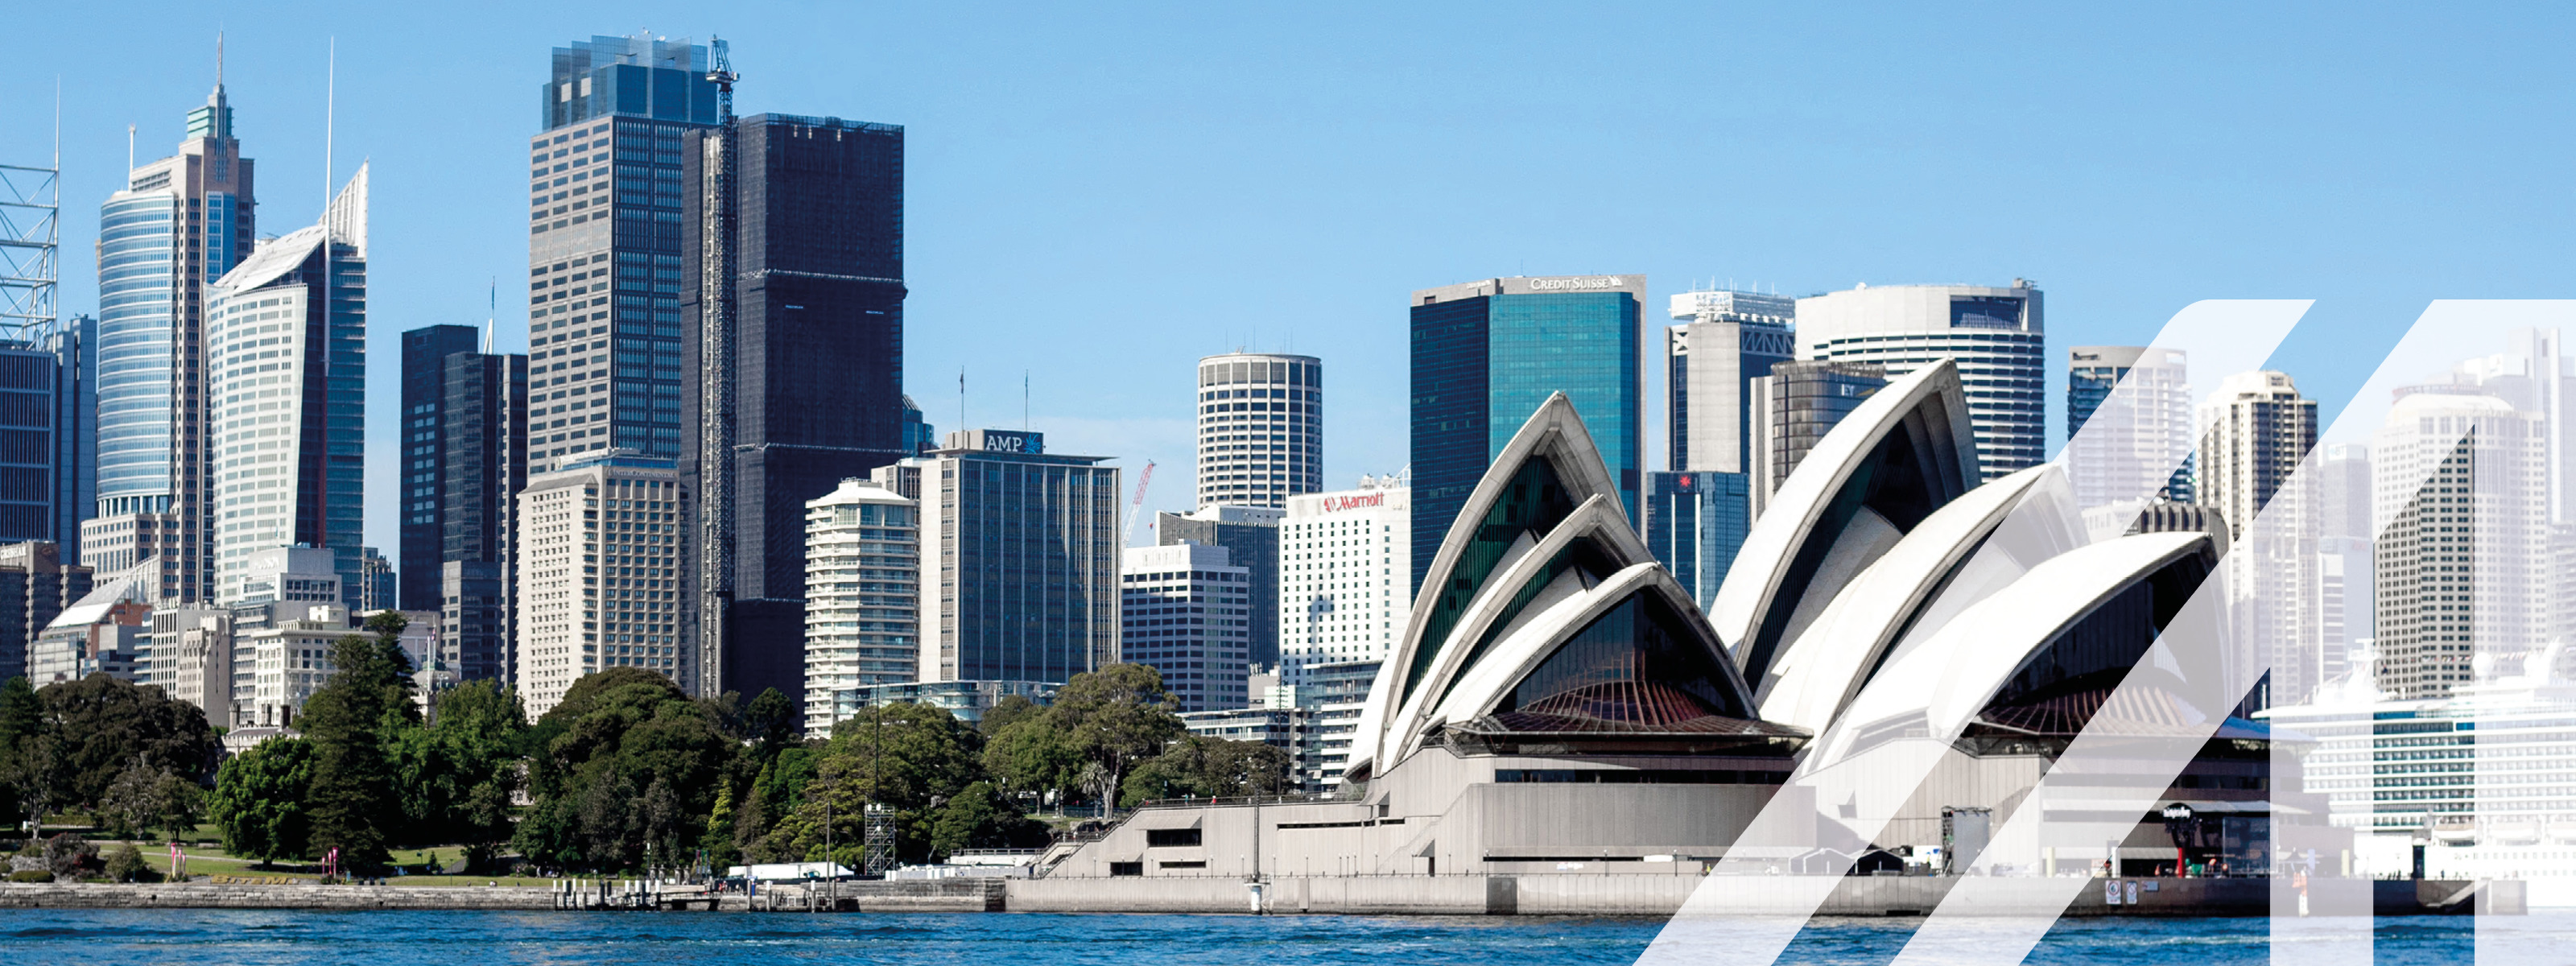 Stadtansicht von Sydney:  Blick vom Wasser auf die Skyline mit der berühmten Oper, umgeben von zahlreichen Wolkenkratzern. Über das Bild wurde ein weißes Austria A gelegt.